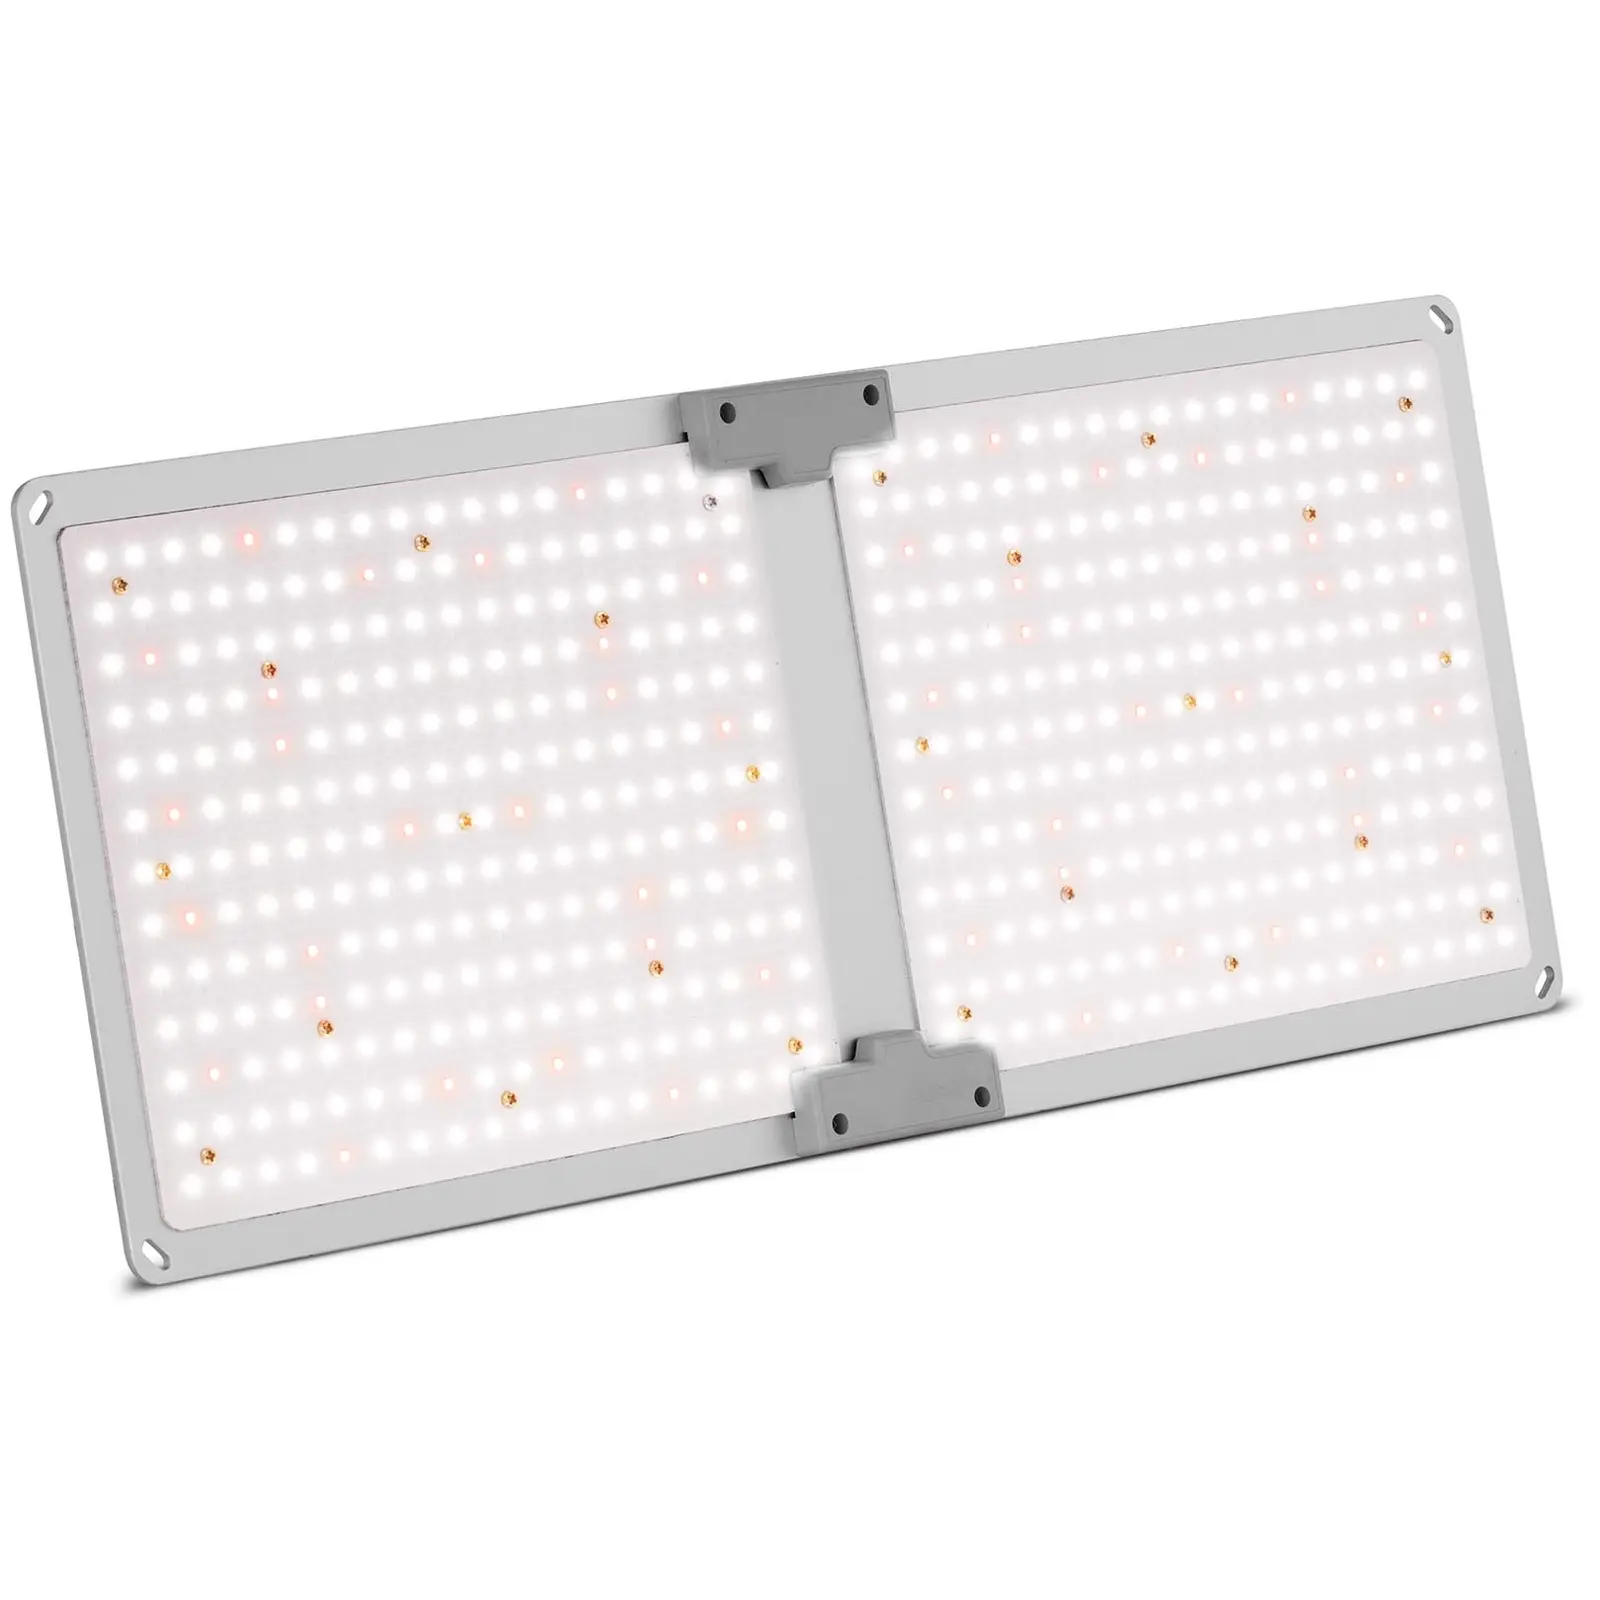 Lámpara LED para plantas - Espectro completo - 2,000 W - 468 LED - 20.000 lúmenes